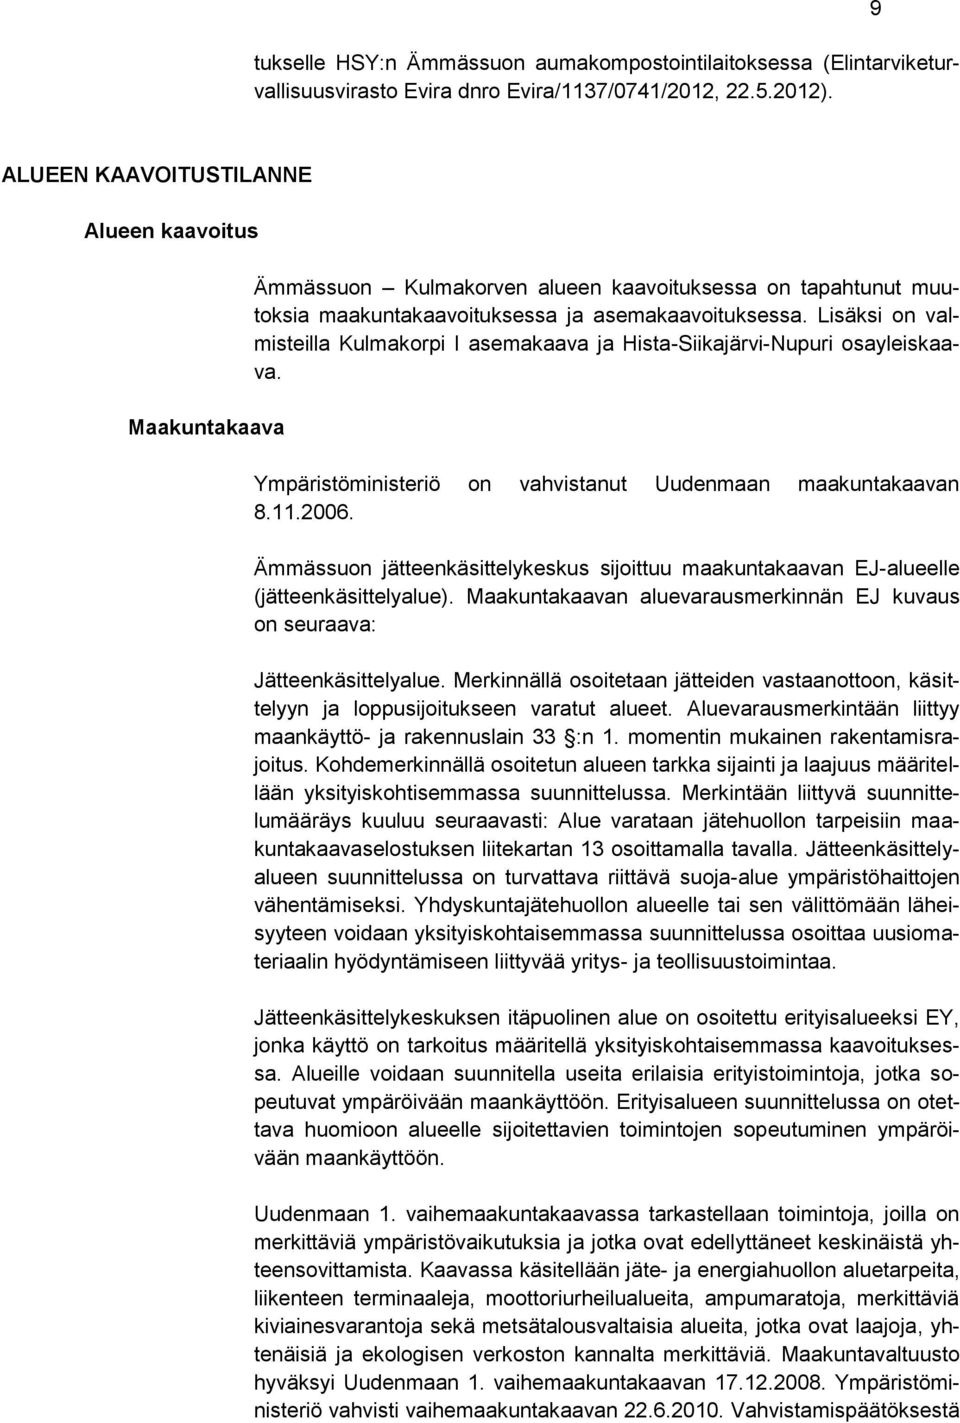 Lisäksi on valmisteilla Kulmakorpi I asemakaava ja Hista-Siikajärvi-Nupuri osayleiskaava. Ympäristöministeriö on vahvistanut Uudenmaan maakuntakaavan 8.11.2006.